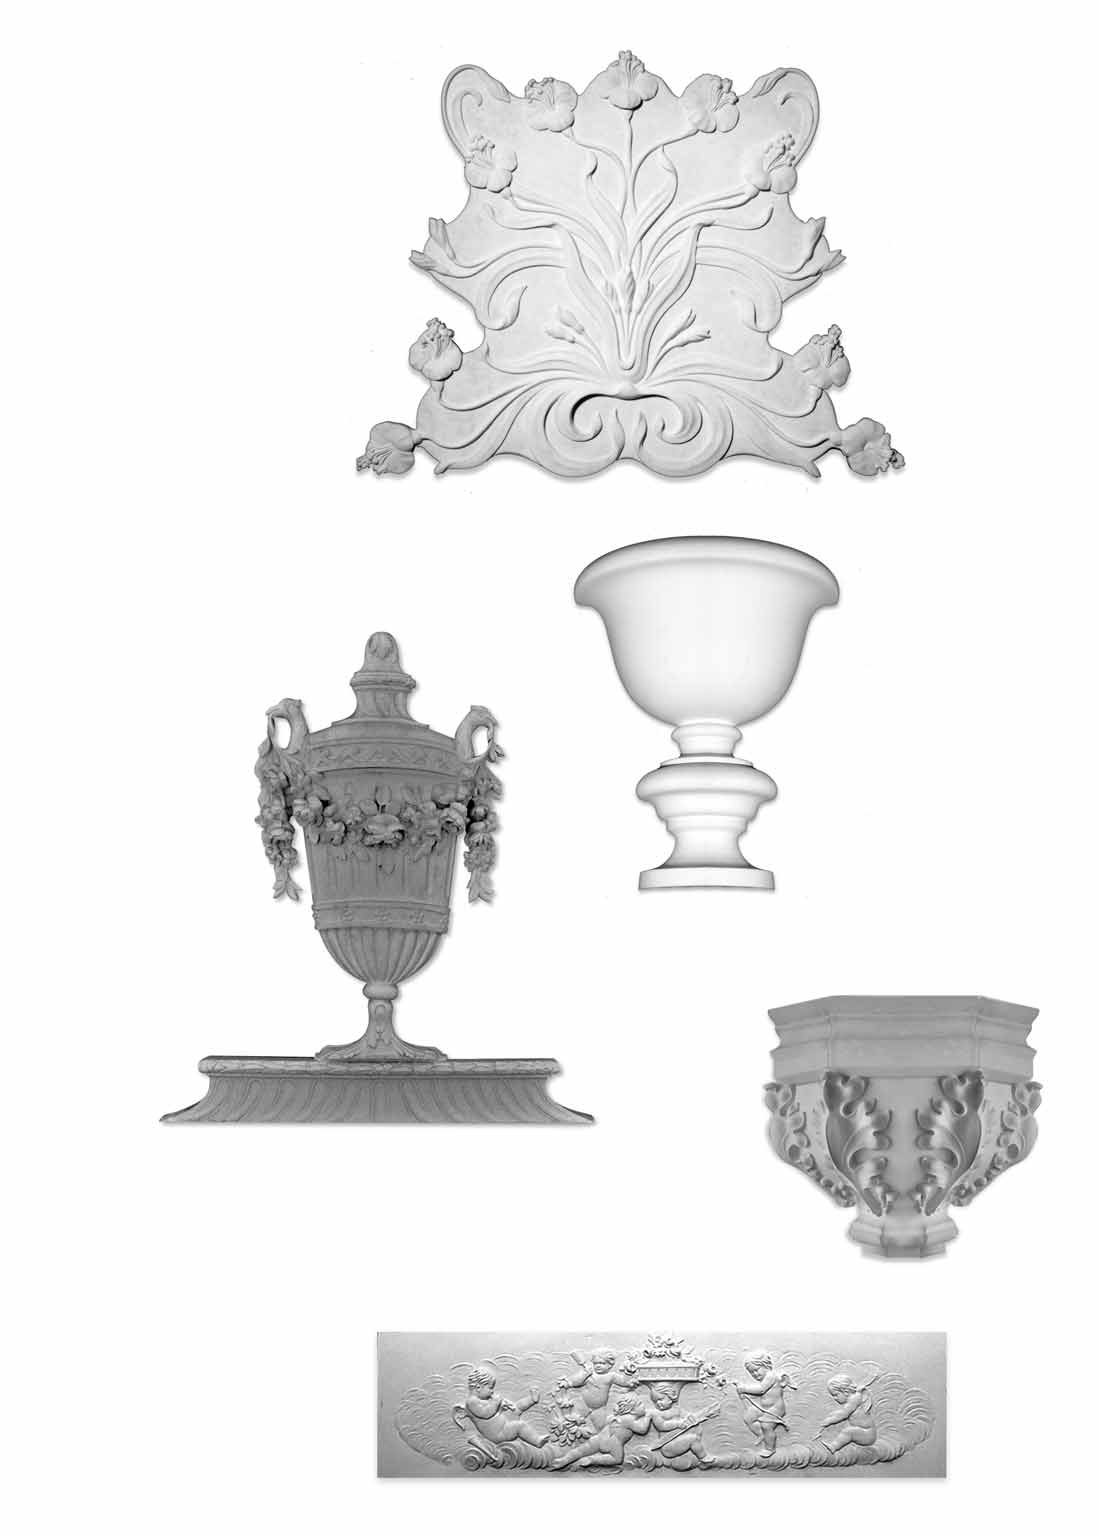 PBP 745 Bouquet de fleurs, art nouveau 635 x 800 mm VSP V02 Vase mural (demi) 480 x 425 x 00 mm VSP V746 Vase, spécial pour frise n 528 860 x 430 mm VSP V749/1 Vase gothique dimensions ( complet ) :